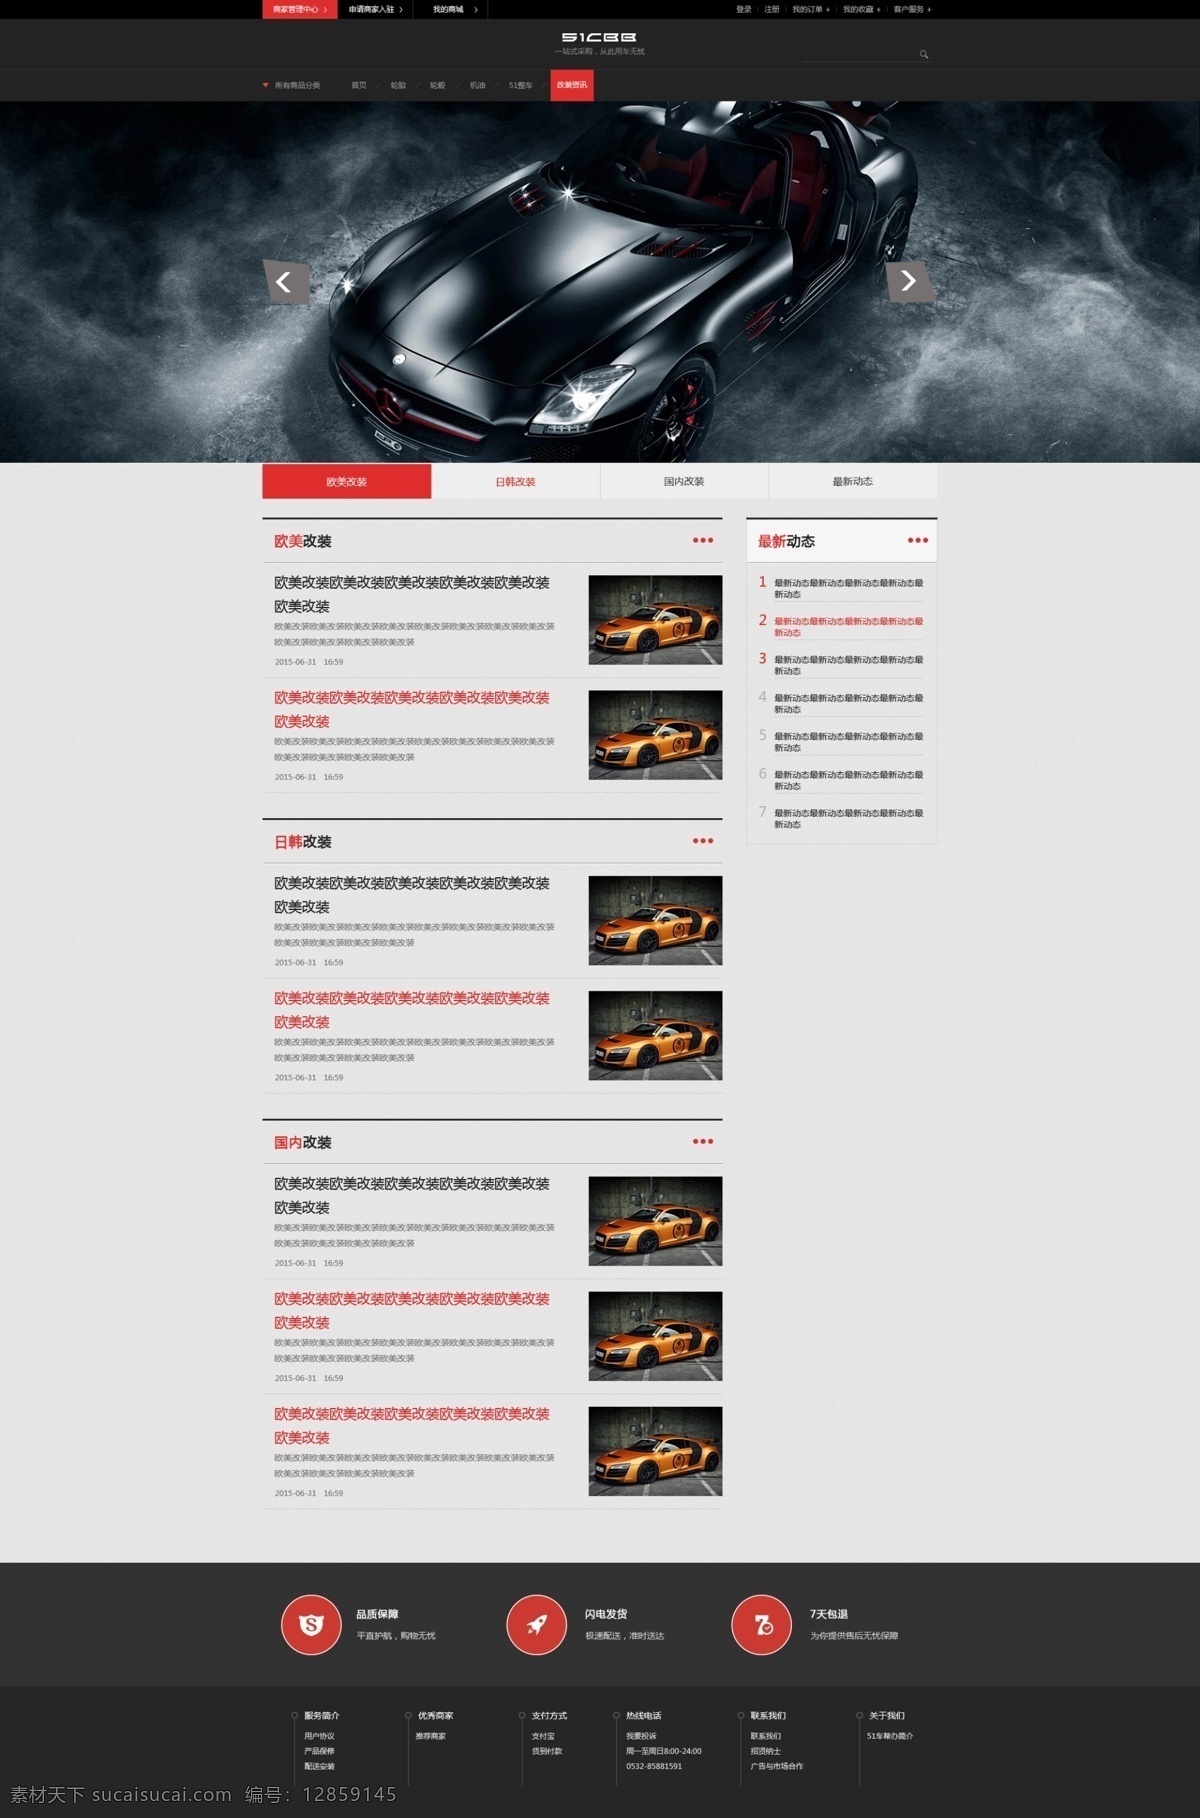 汽车 俱乐部 页面 俱乐部页面 汽车俱乐部 汽车页面设计 黑色网站设计 黑色风格 web 界面设计 中文模板